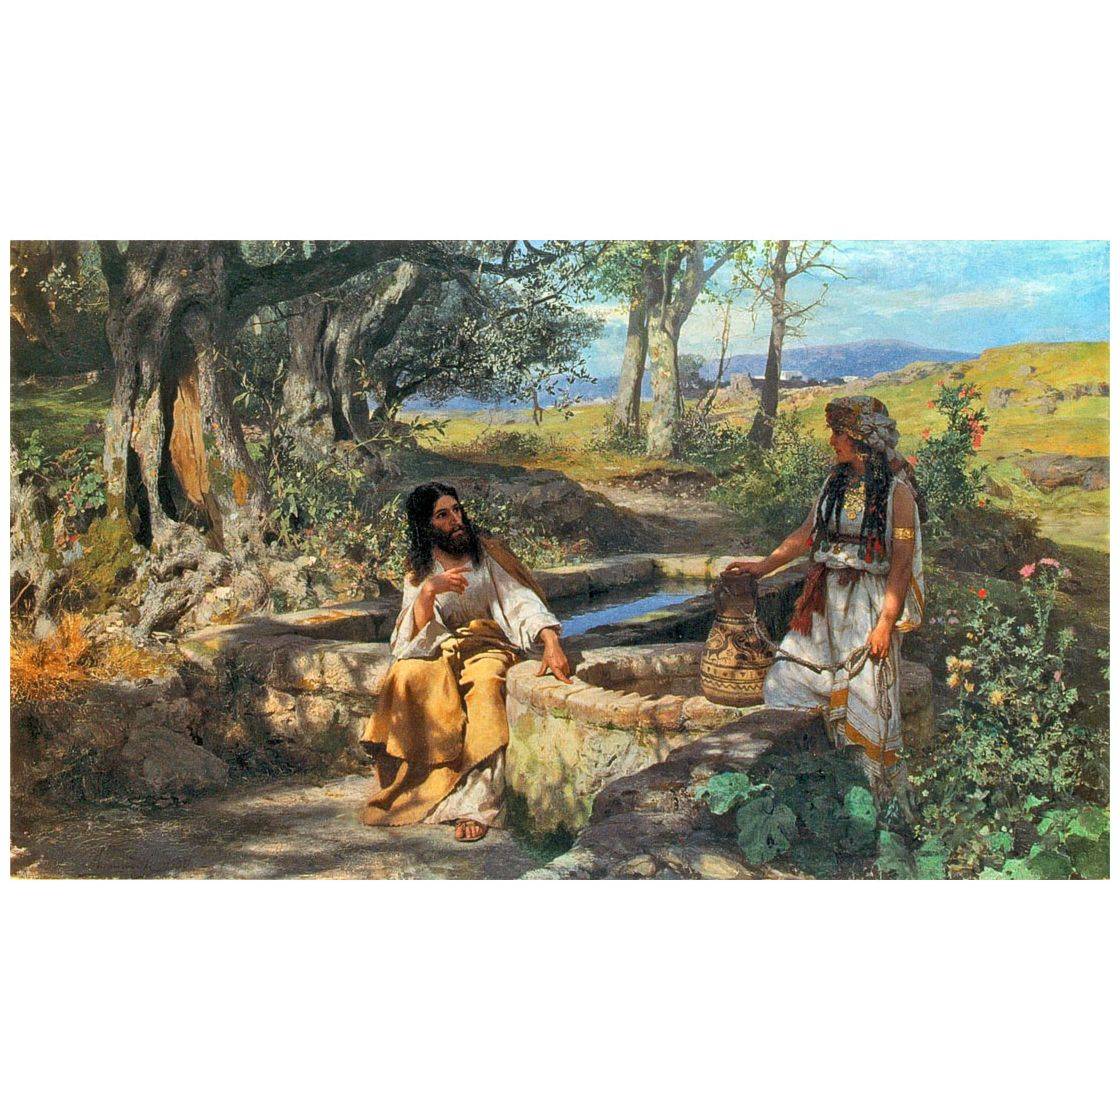 Генрих Семирадский. Христос и самаритянка. 1890. Национальная галерея, Львов